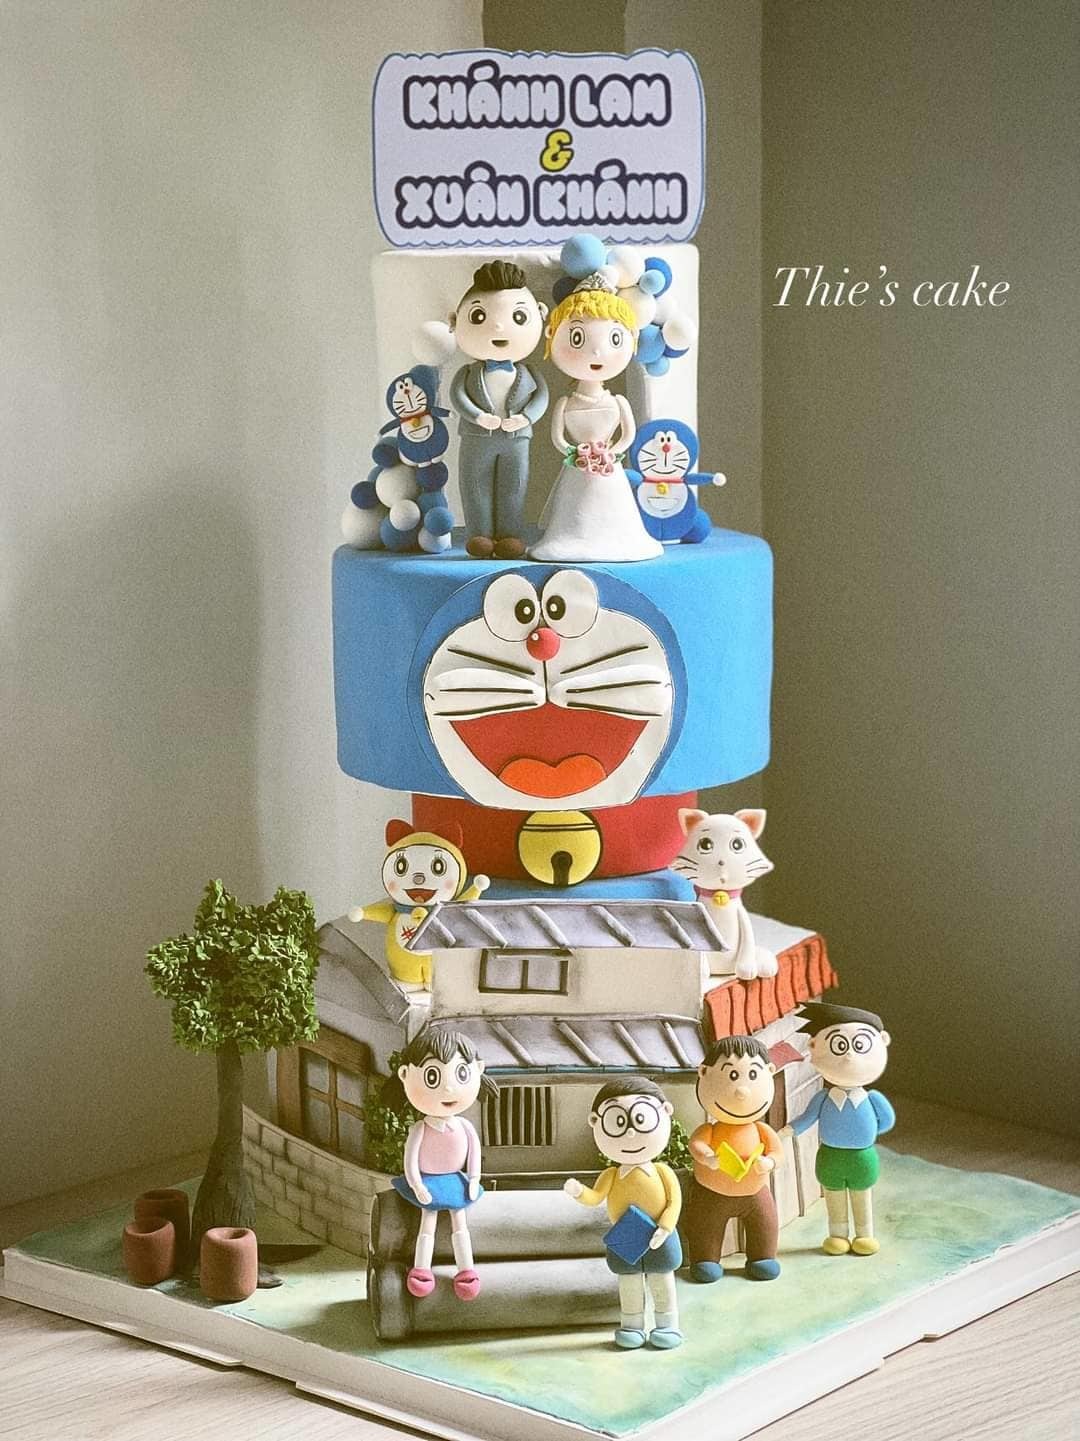 Đón xem những hình ảnh tuyệt đẹp về đám cưới fan Doraemon, được thực hiện với sự đam mê và tình yêu dành cho Doraemon và đôi bạn Nobita và Shizuka.